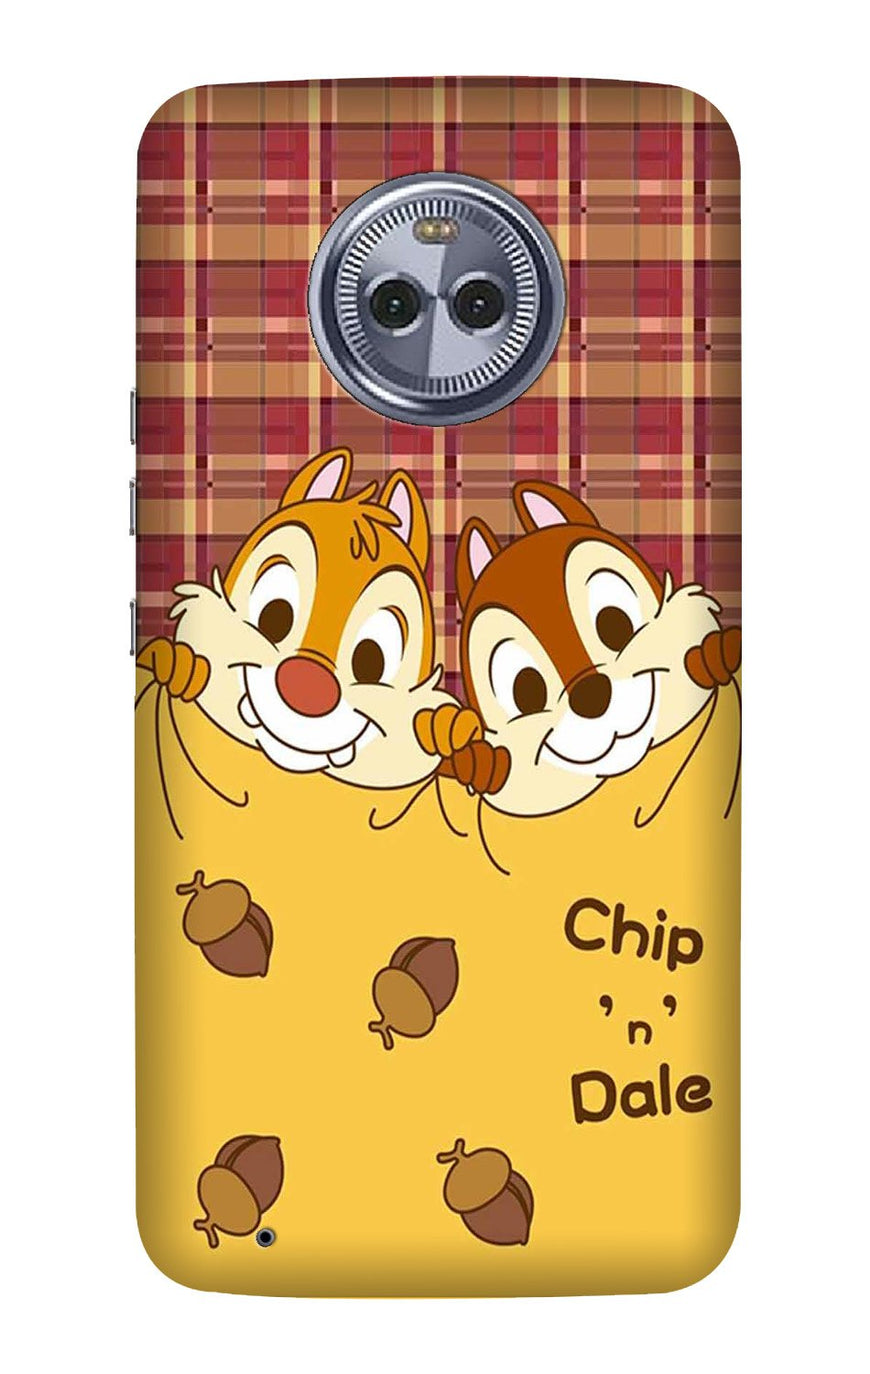 Chip n Dale Mobile Back Case for Moto G6 Plus (Design - 342)